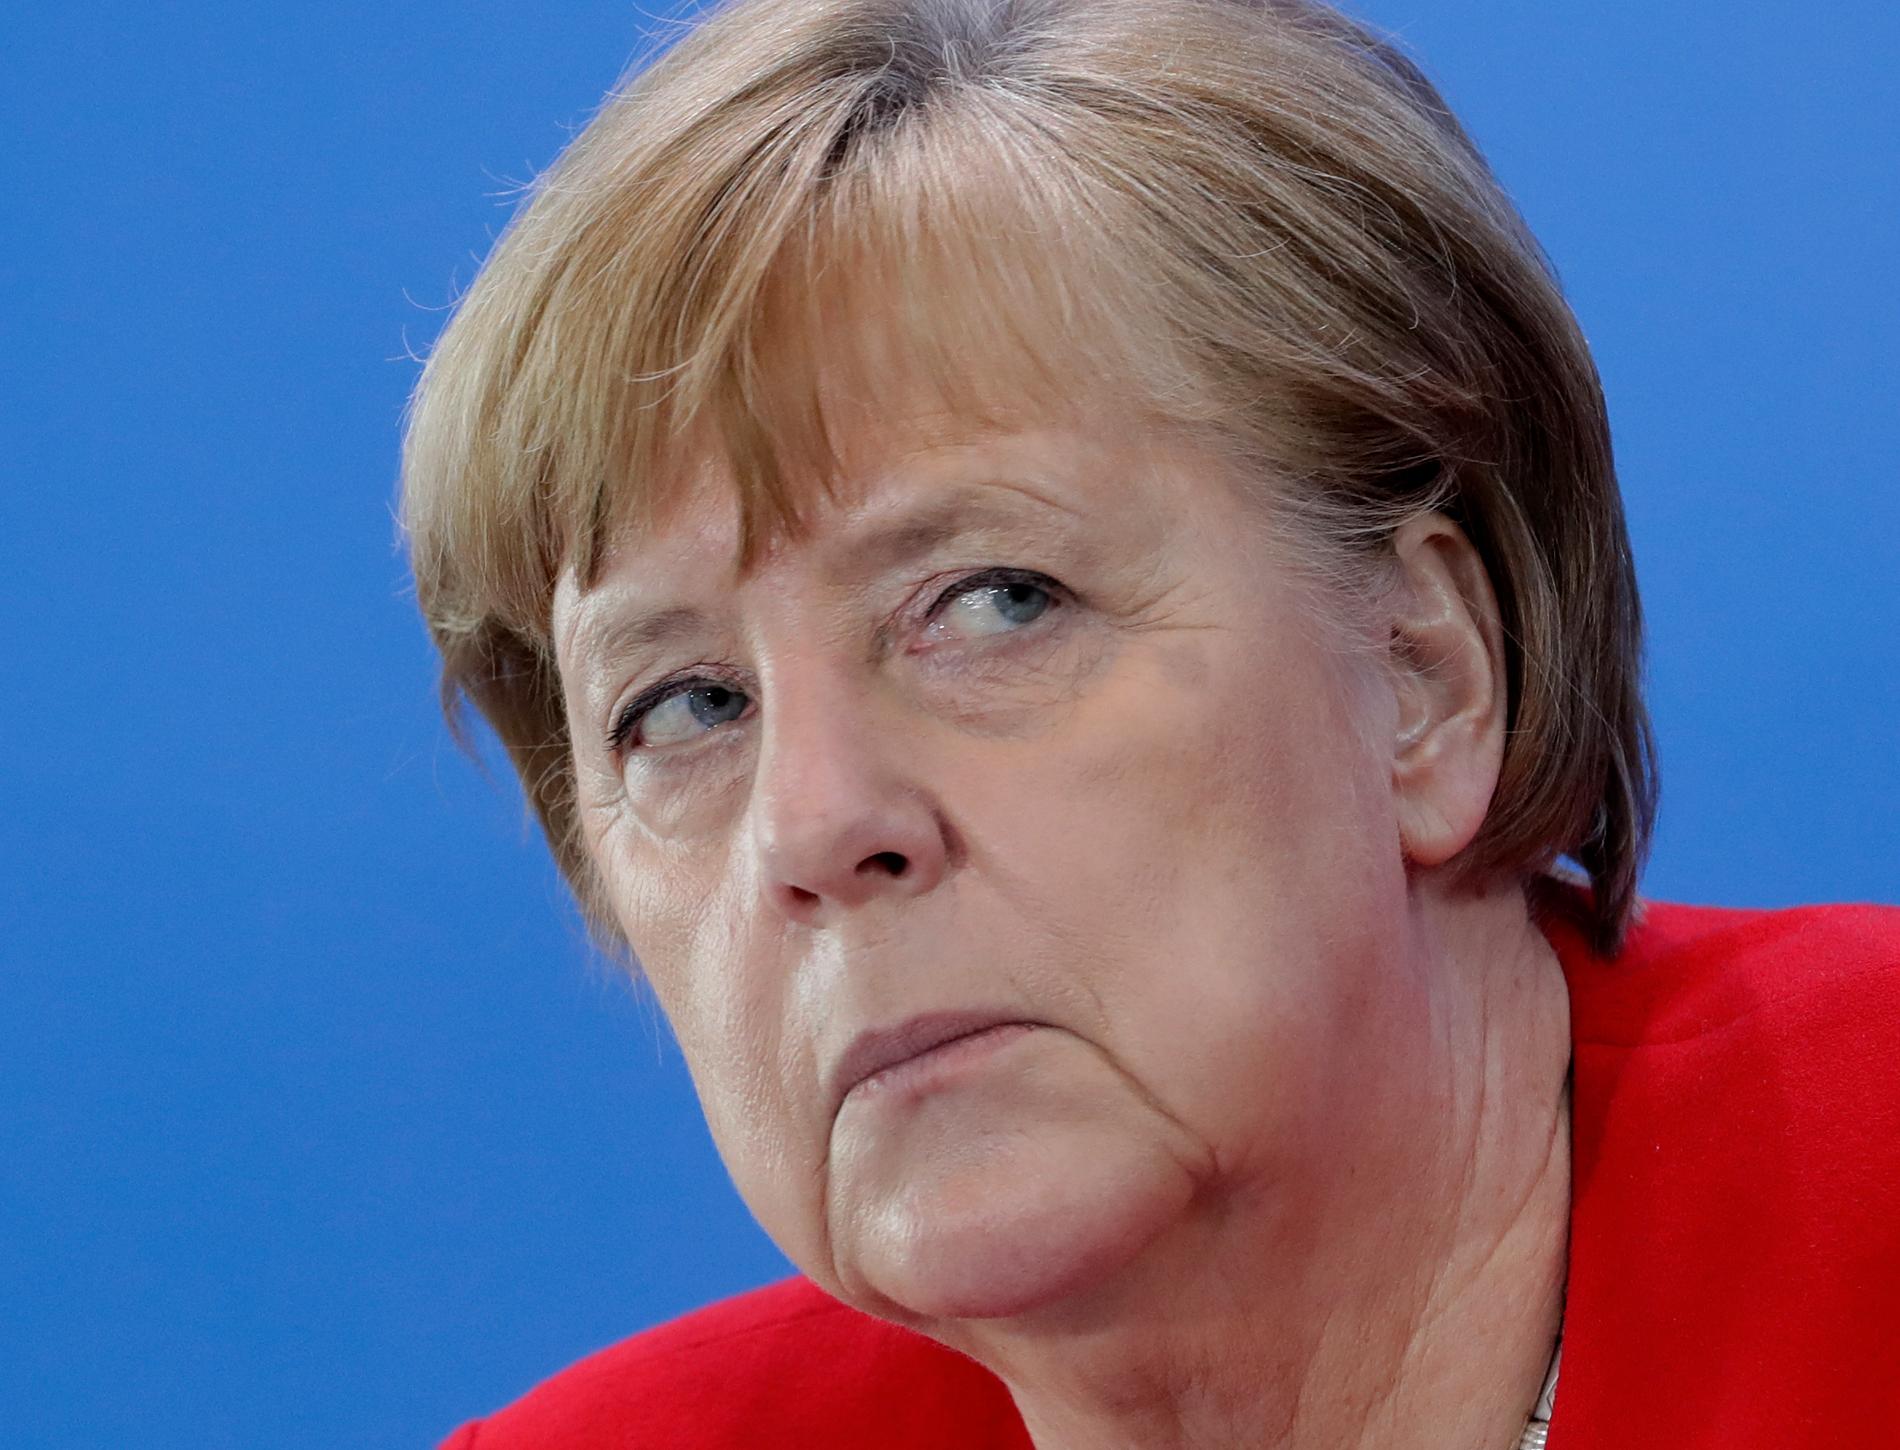 Tysklands förbundskansler Angela Merkel bedömer att första fasen av coronaepidemin är över för Tysklands del "Men vägen framåt är fortsatt lång"